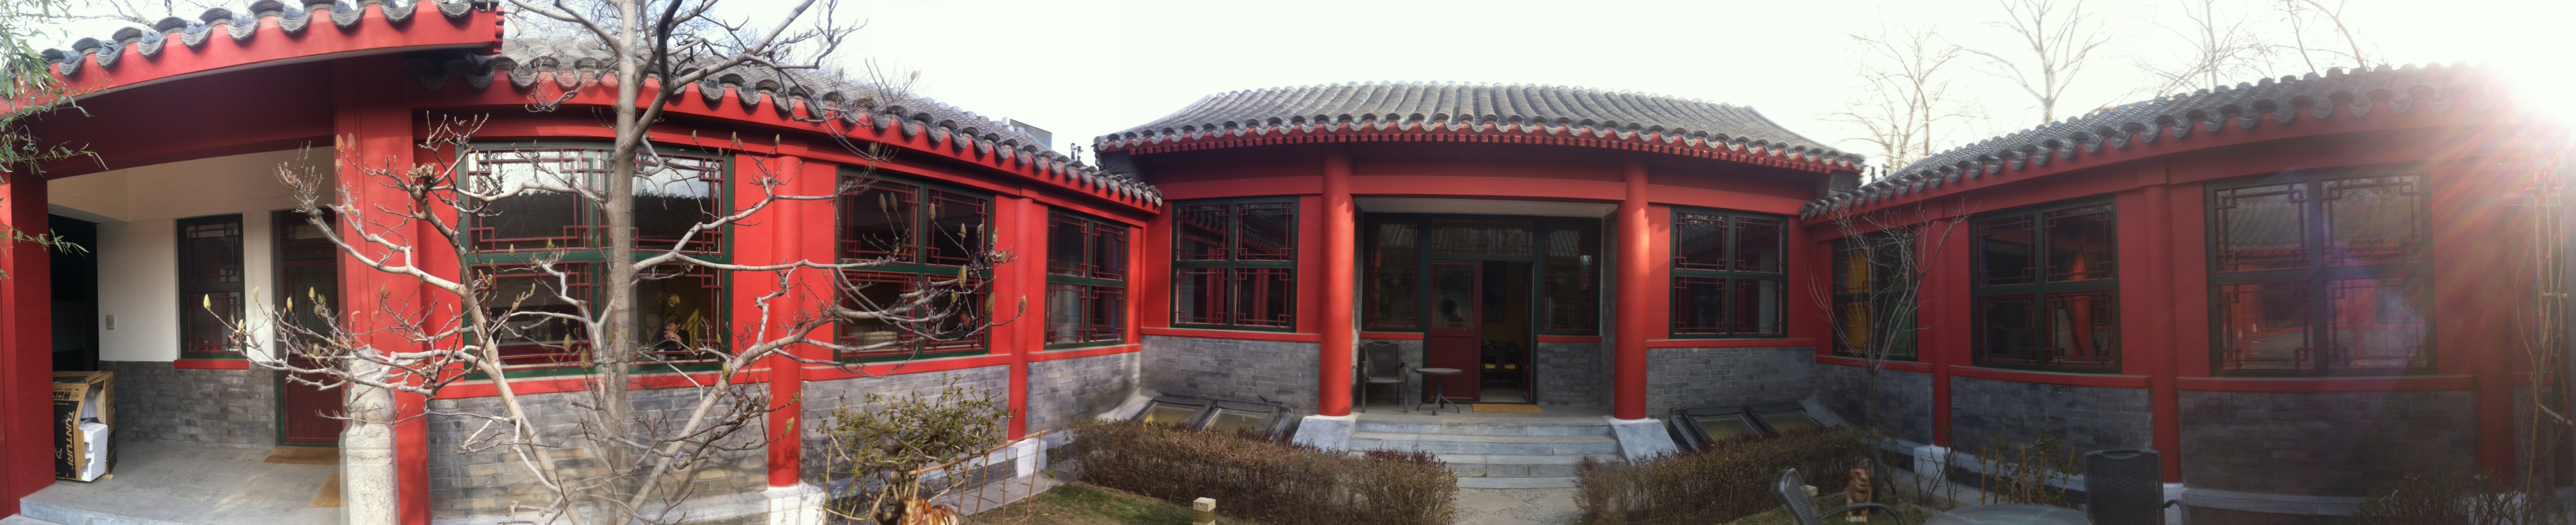 La maison de notre séjour à Pékin